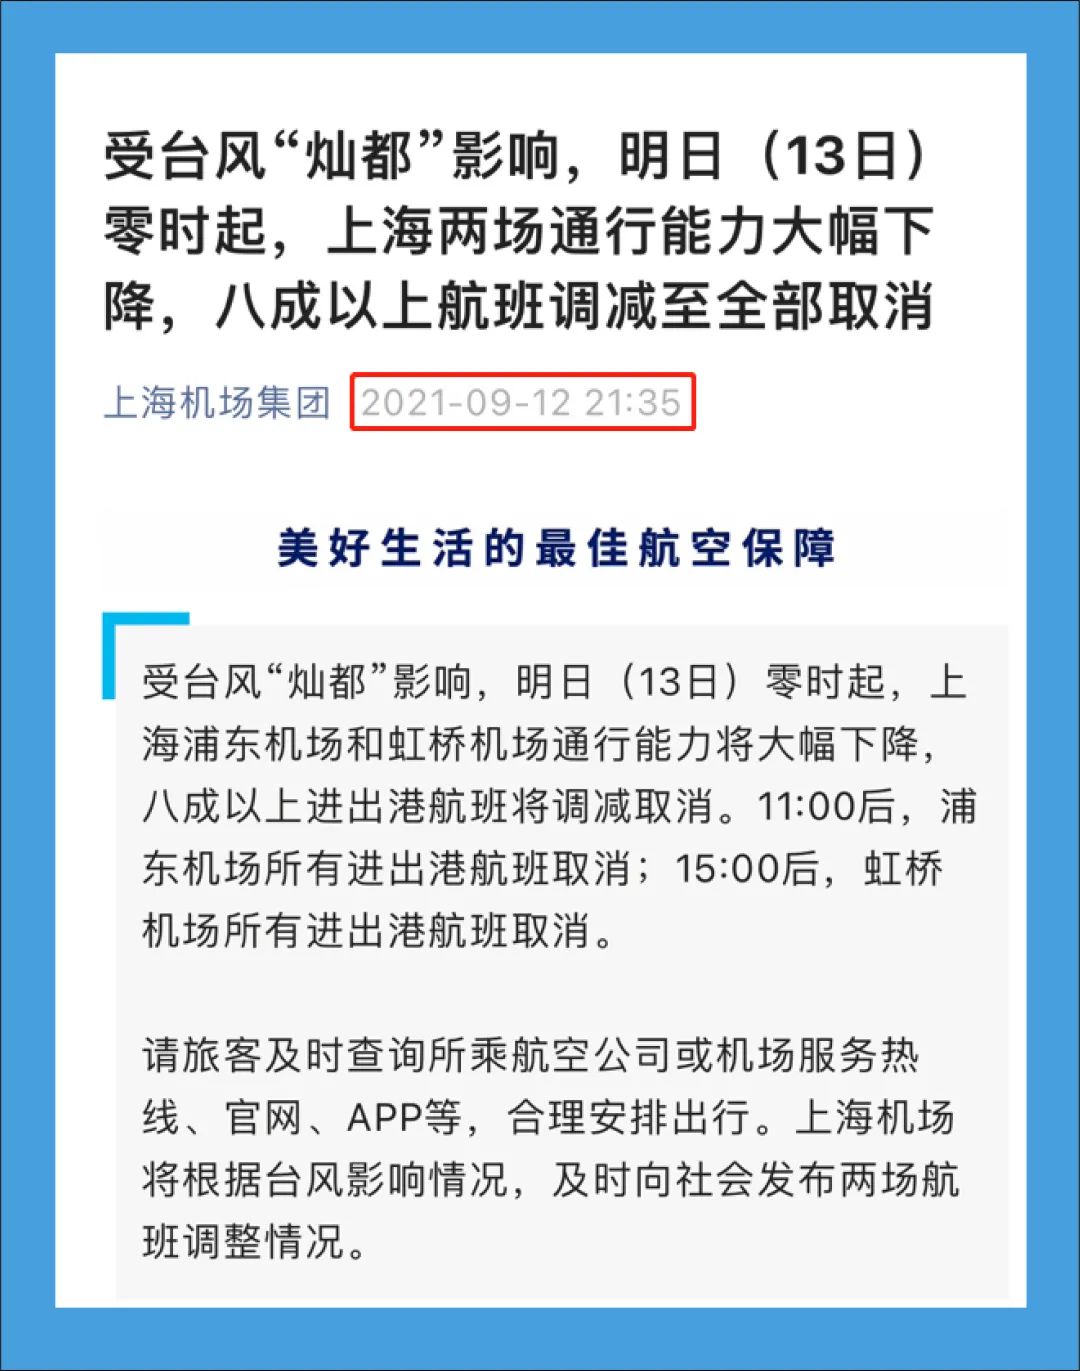 【注意】上海浦东和虹桥机场运行正常，网传信息不属实-